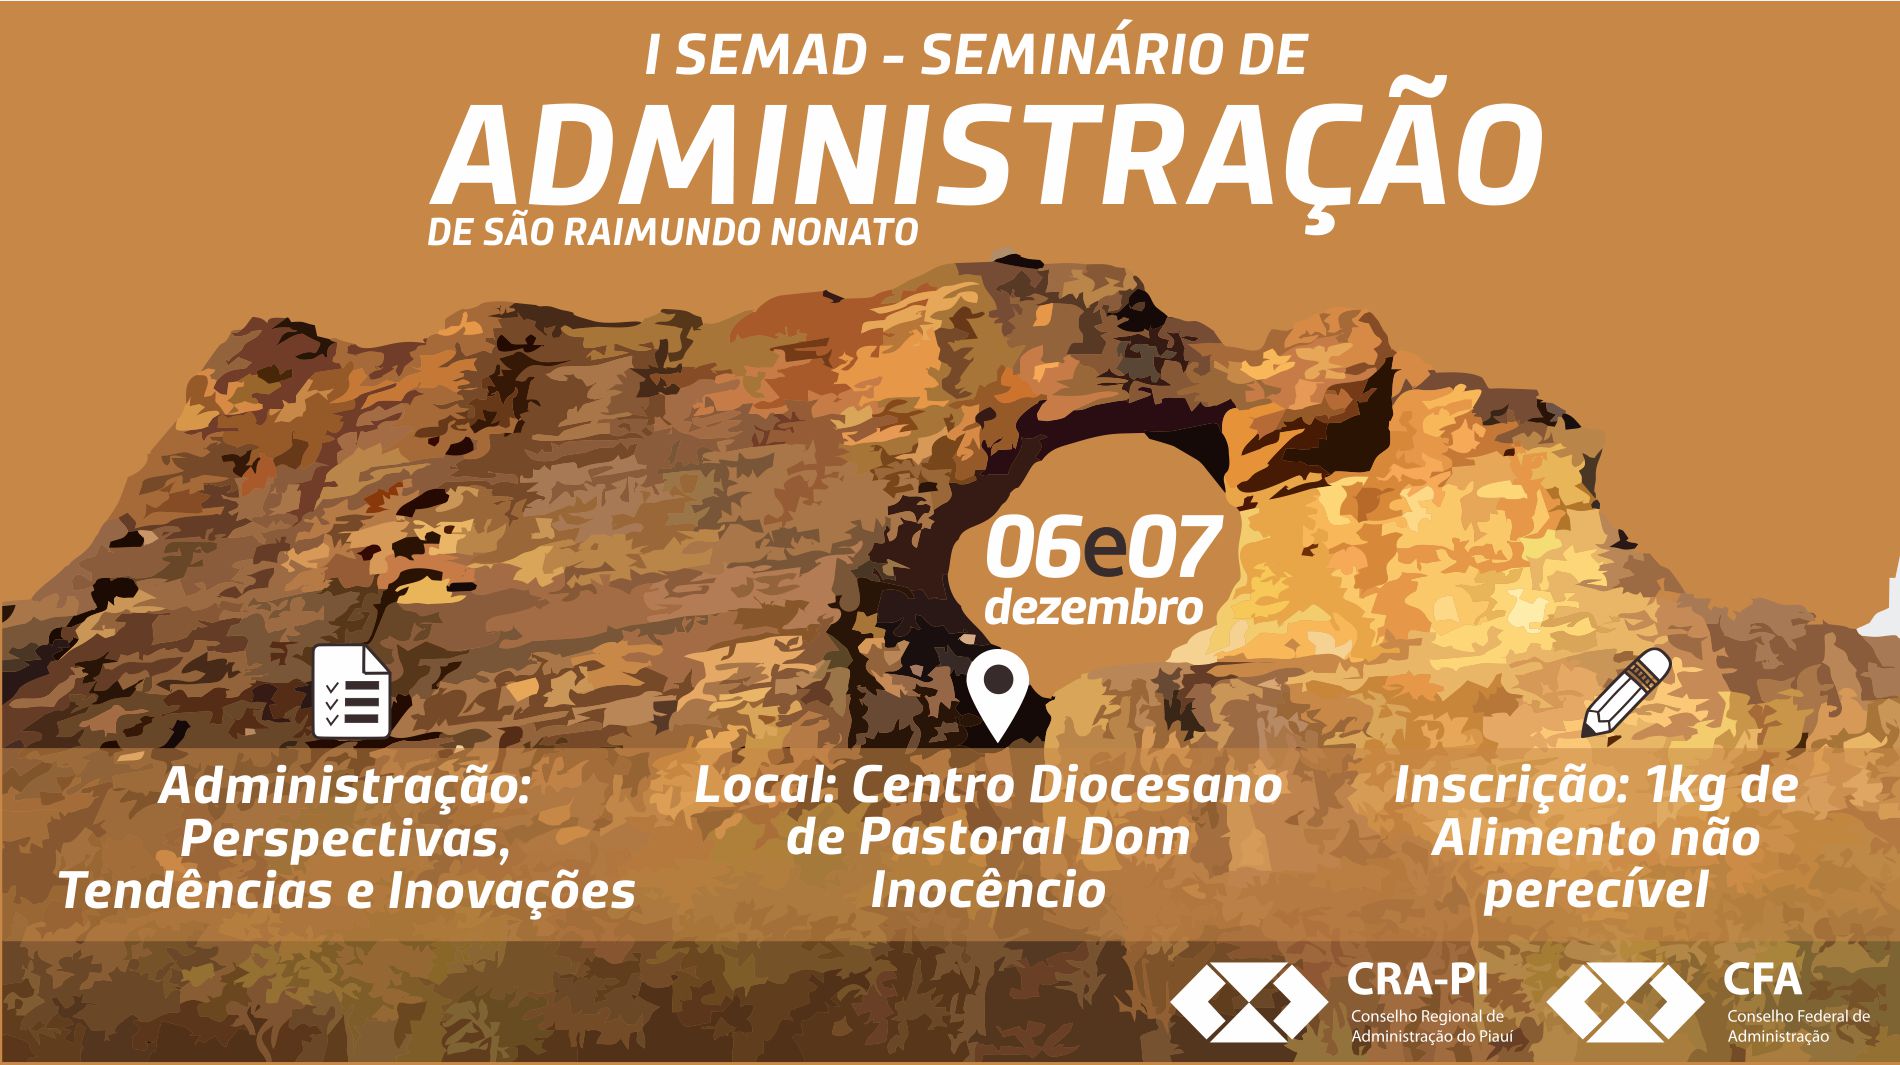 I SEMAD- Seminário de Administração de São Raimundo Nonato